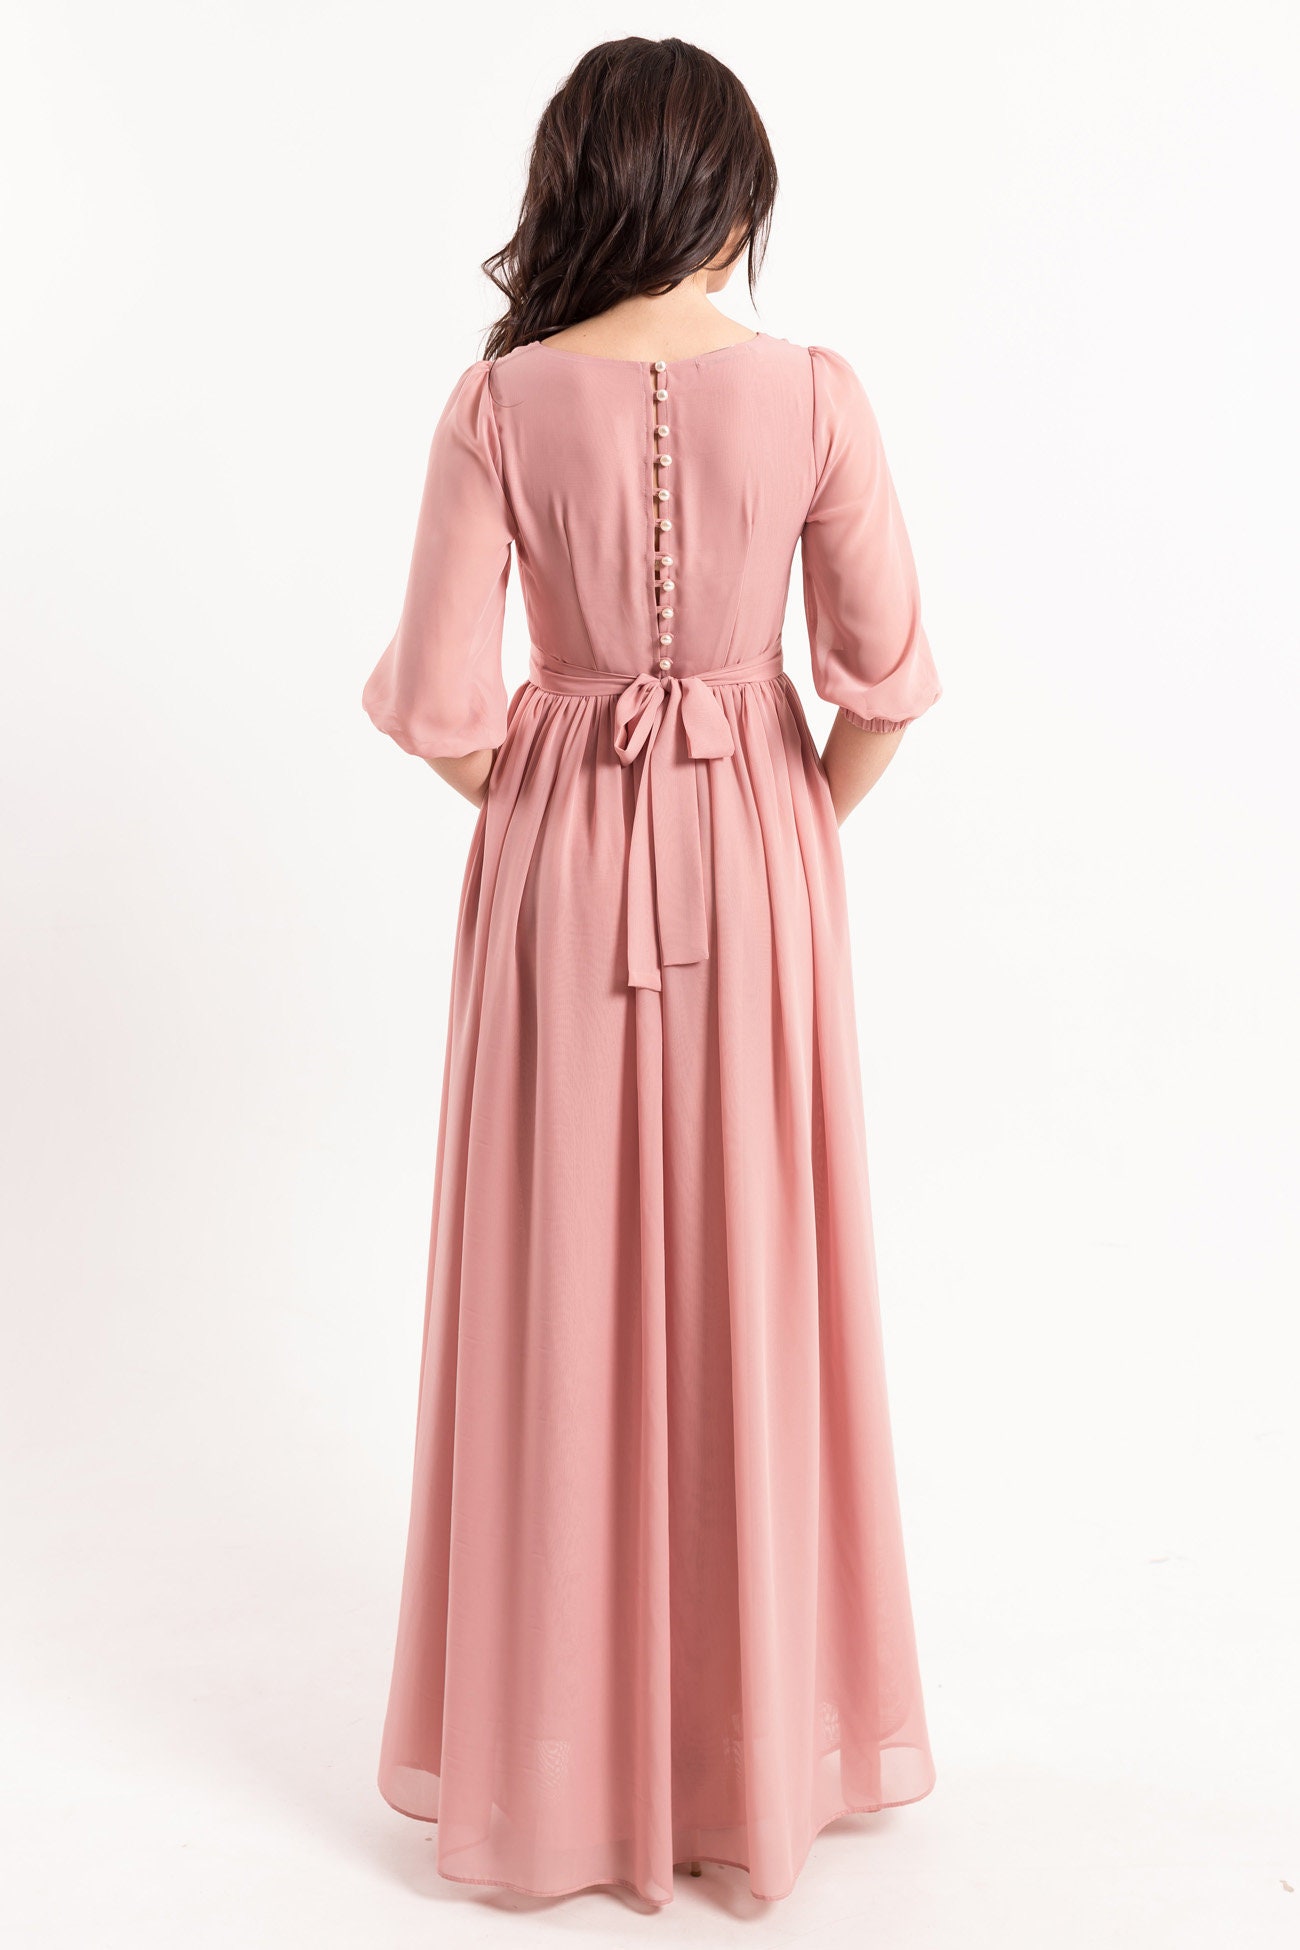 Vestidos Mujer  Morgan Vestido ajustado con efecto drapeado rosa palo mujer  Rosa Palo ⋆ Omtotheworld